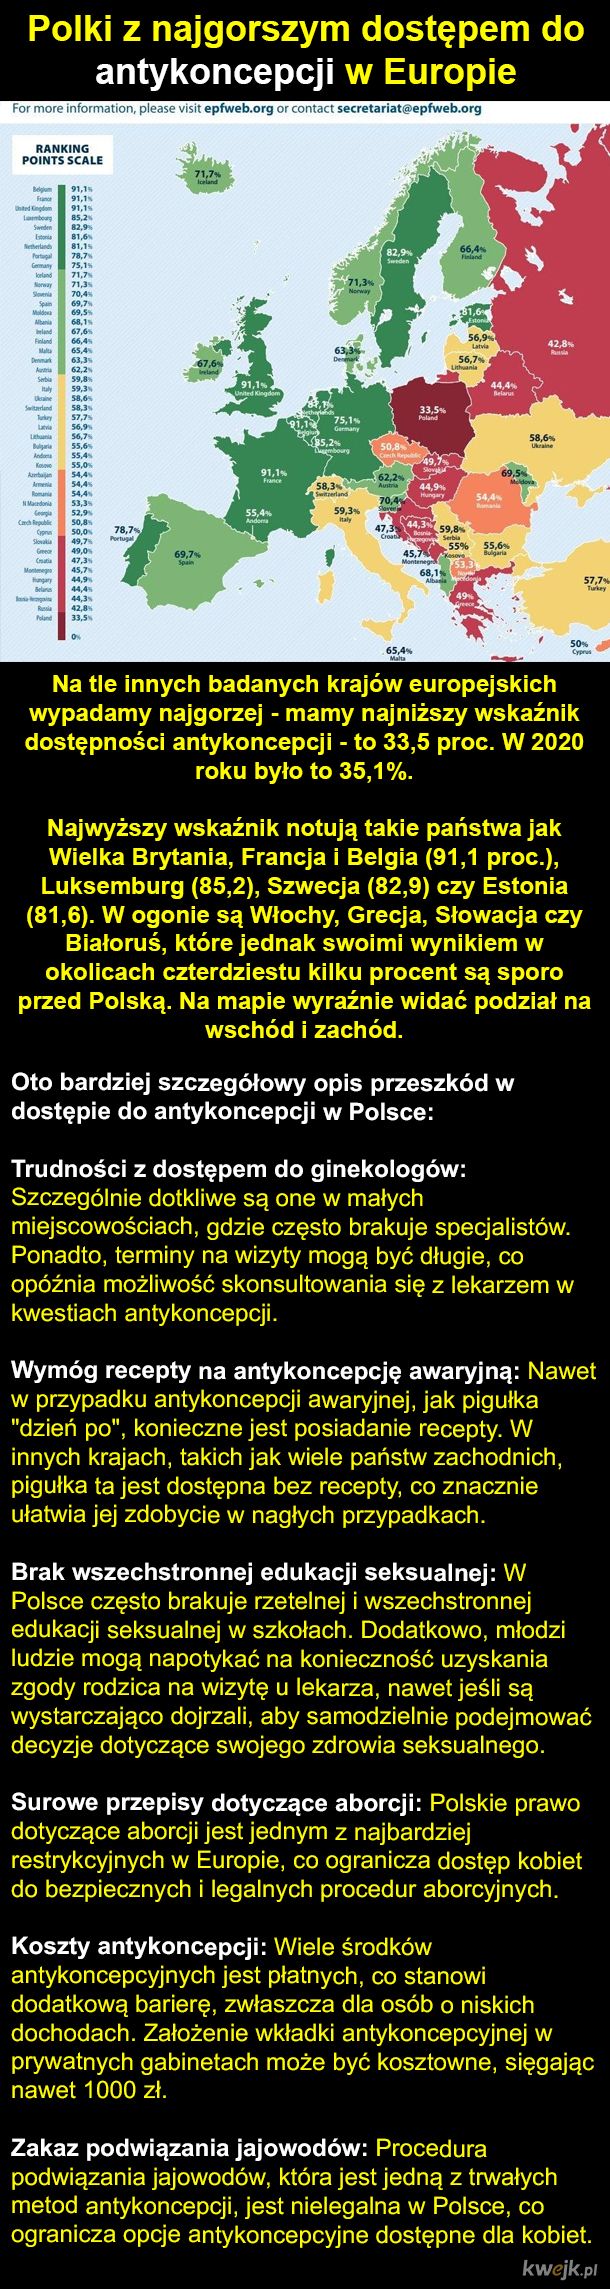 Antykoncepcja w Polsce